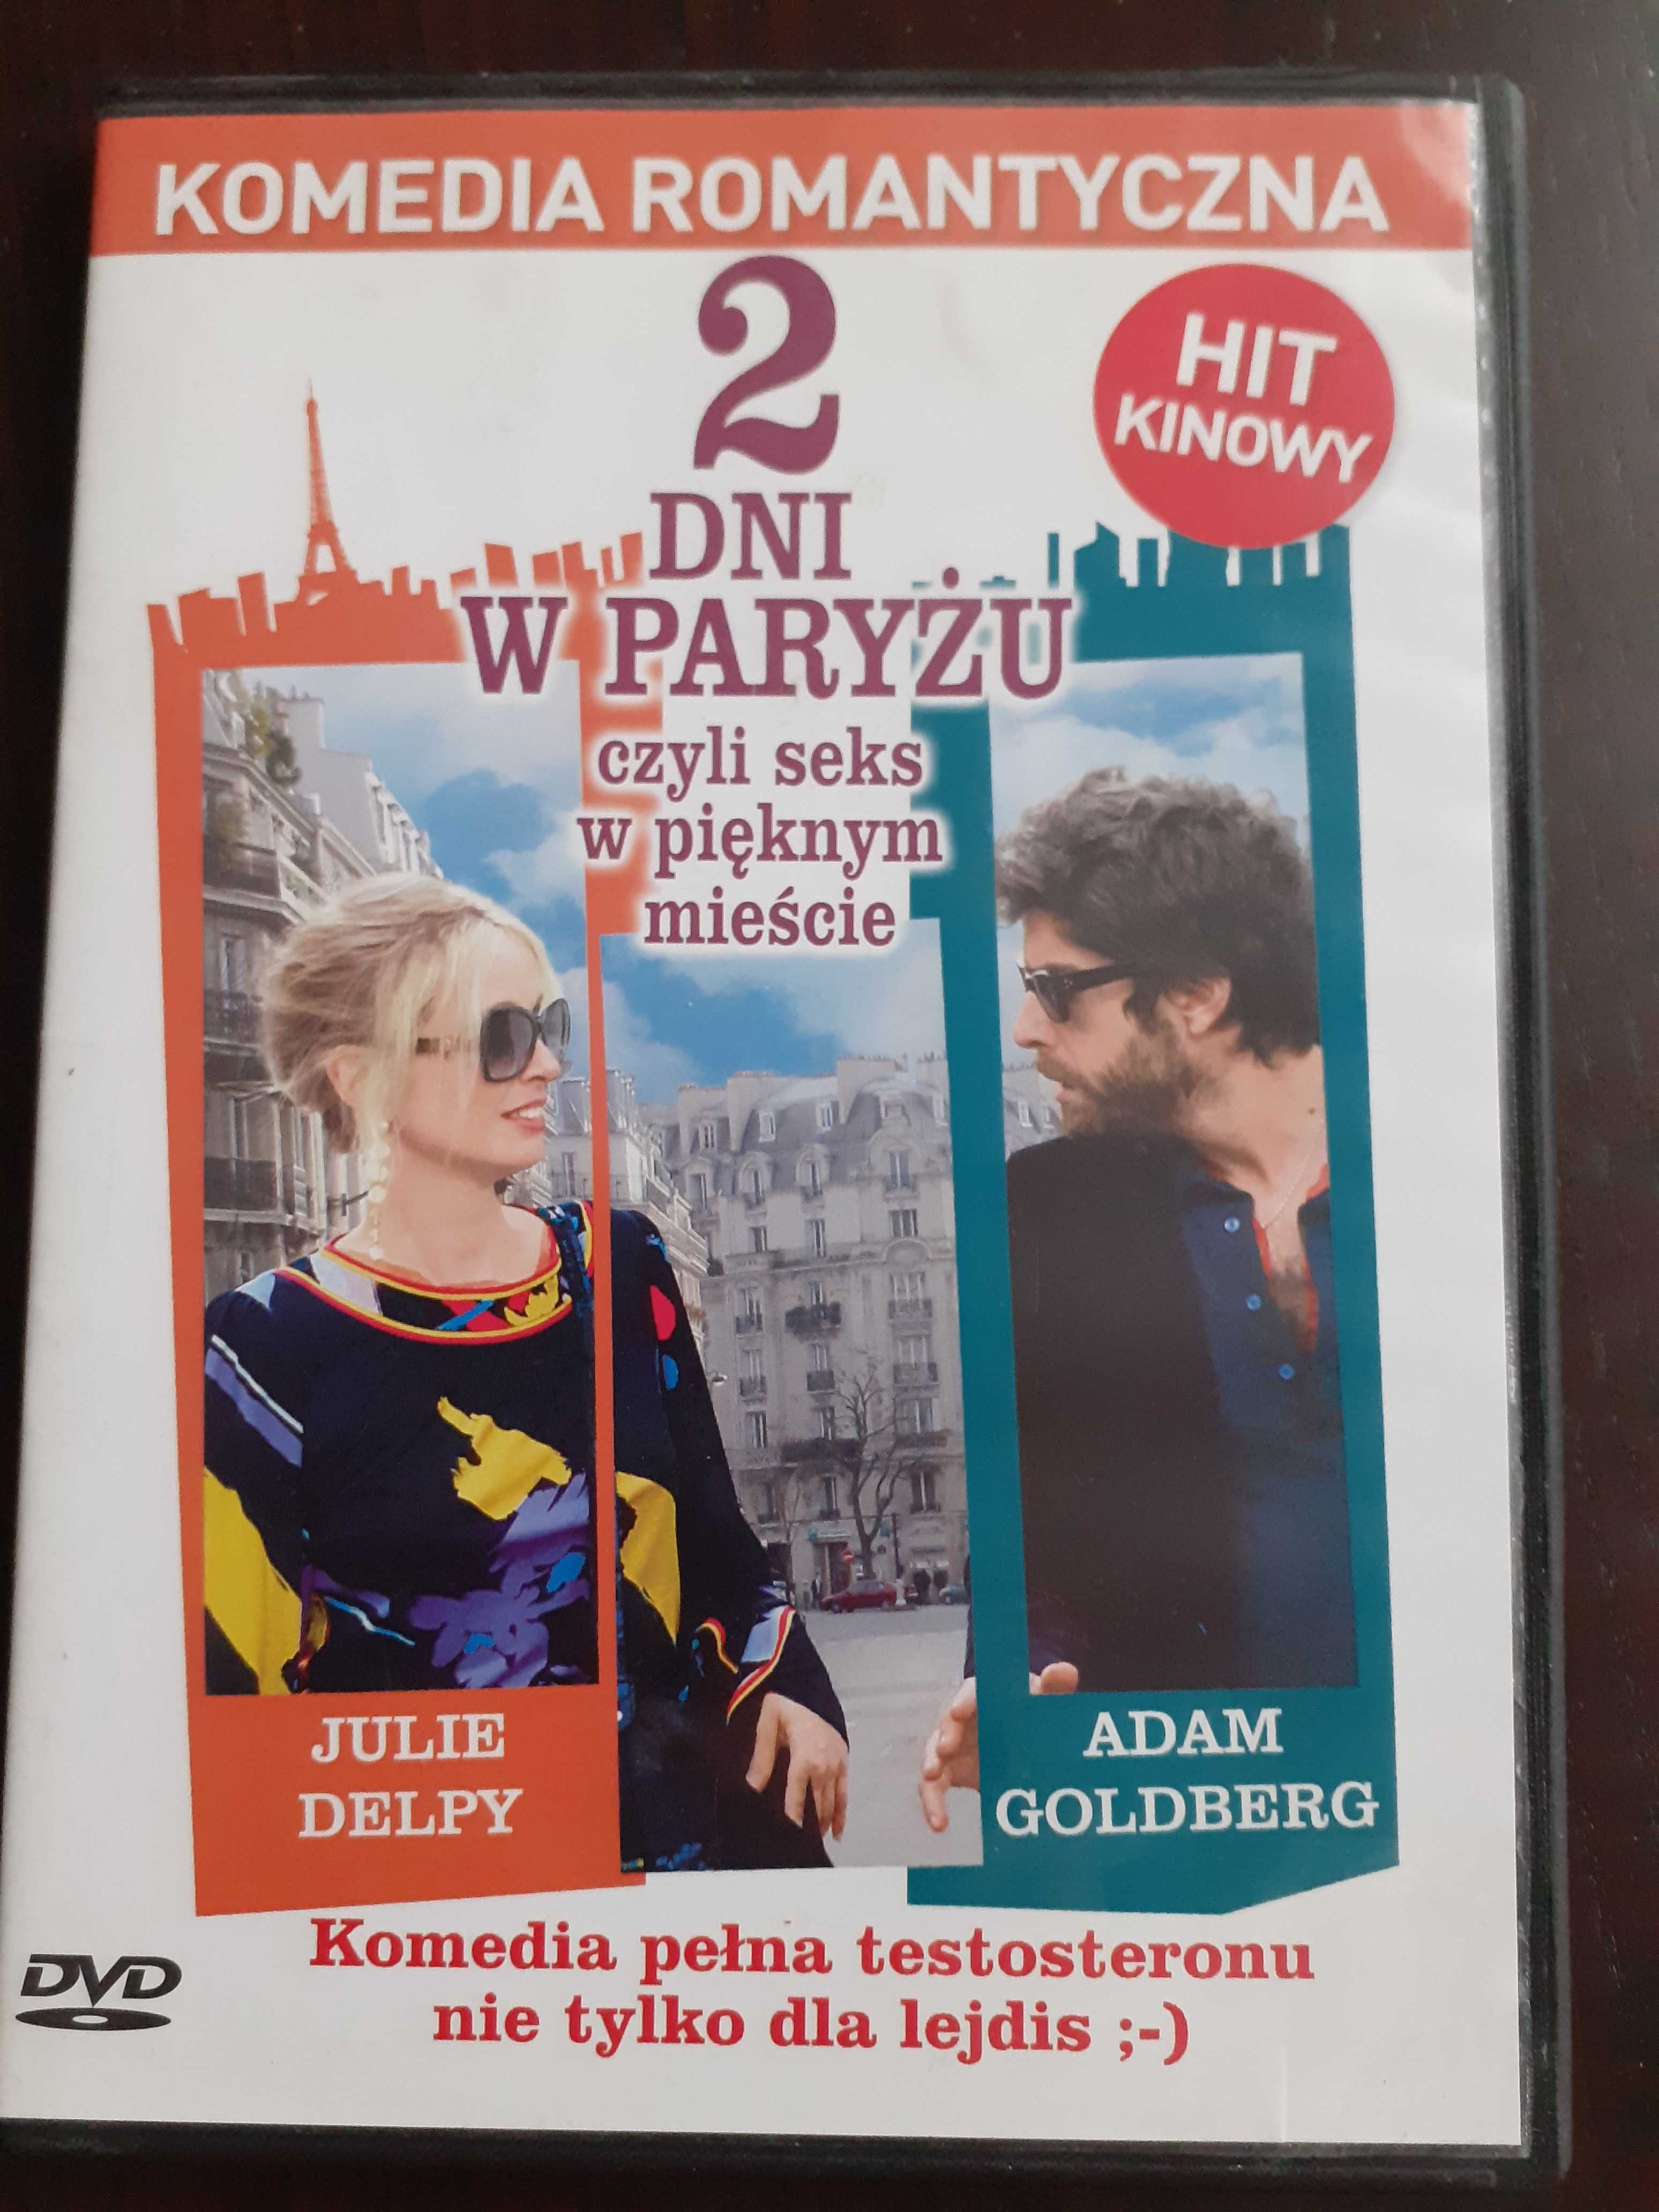 Komedia romantyczna 2 dni w Paryżu film DVD